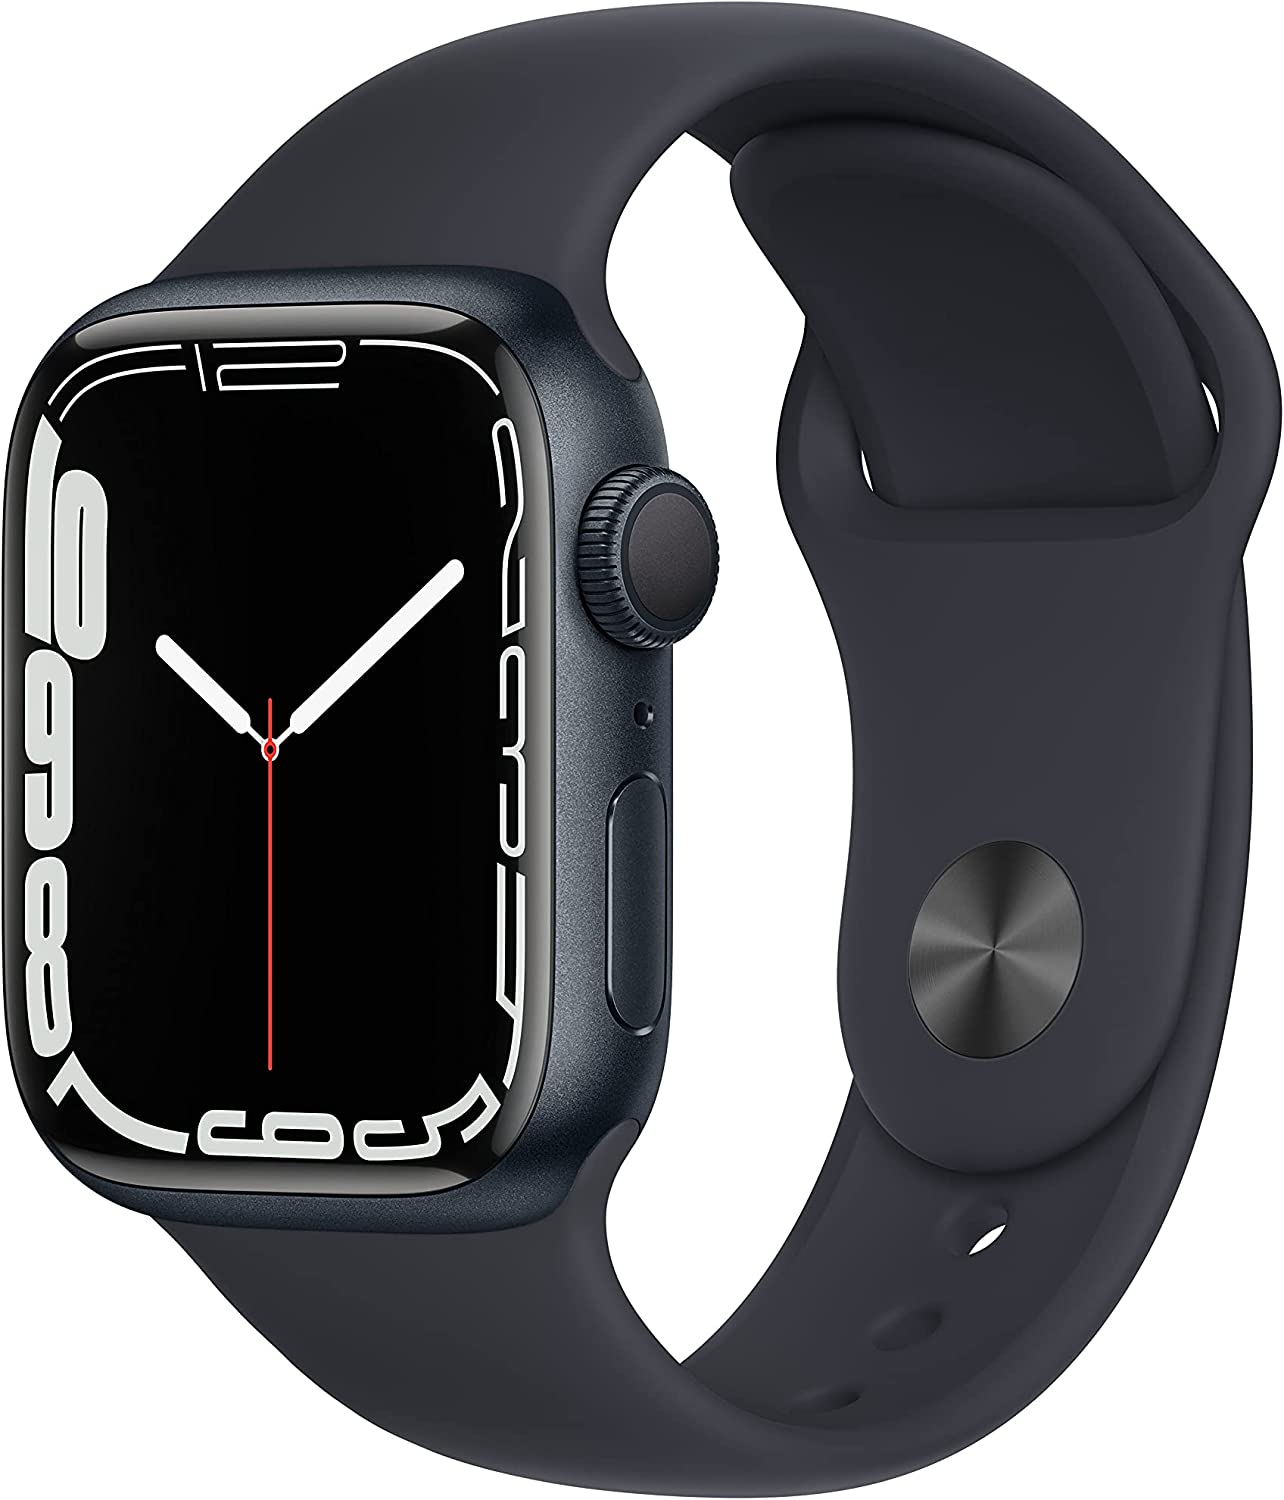 Bild zu Smartwatch Apple Watch Series 7 (GPS) 41mm, Aluminium, Sportarmband für 377,12€ (Vergleich: 418,99€)